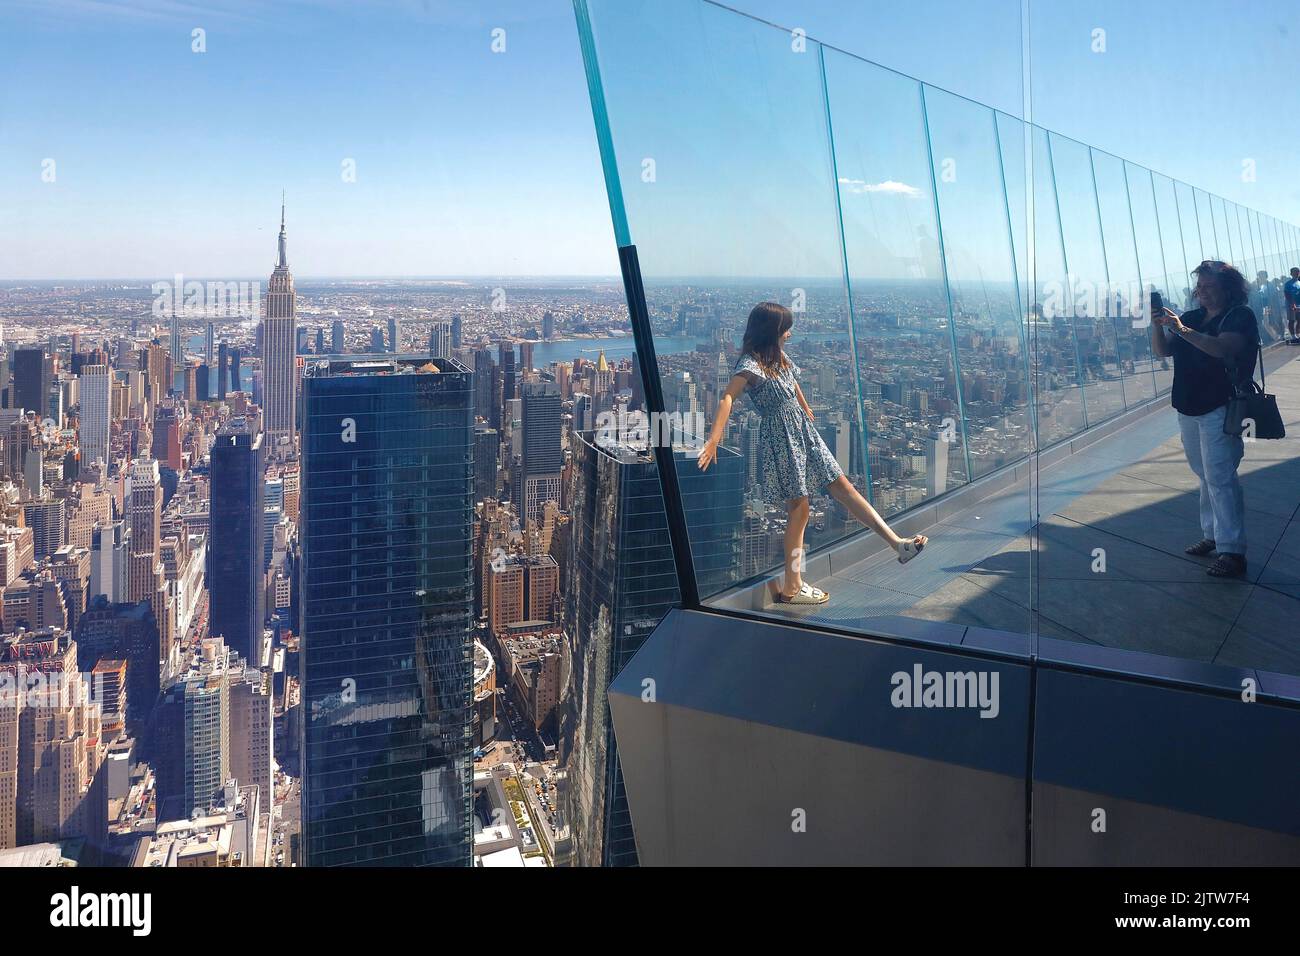 Une fille pose pour une photo sur la plate-forme d'observation Edge à Hudson yards, Manhattan, New York, City, USA Banque D'Images